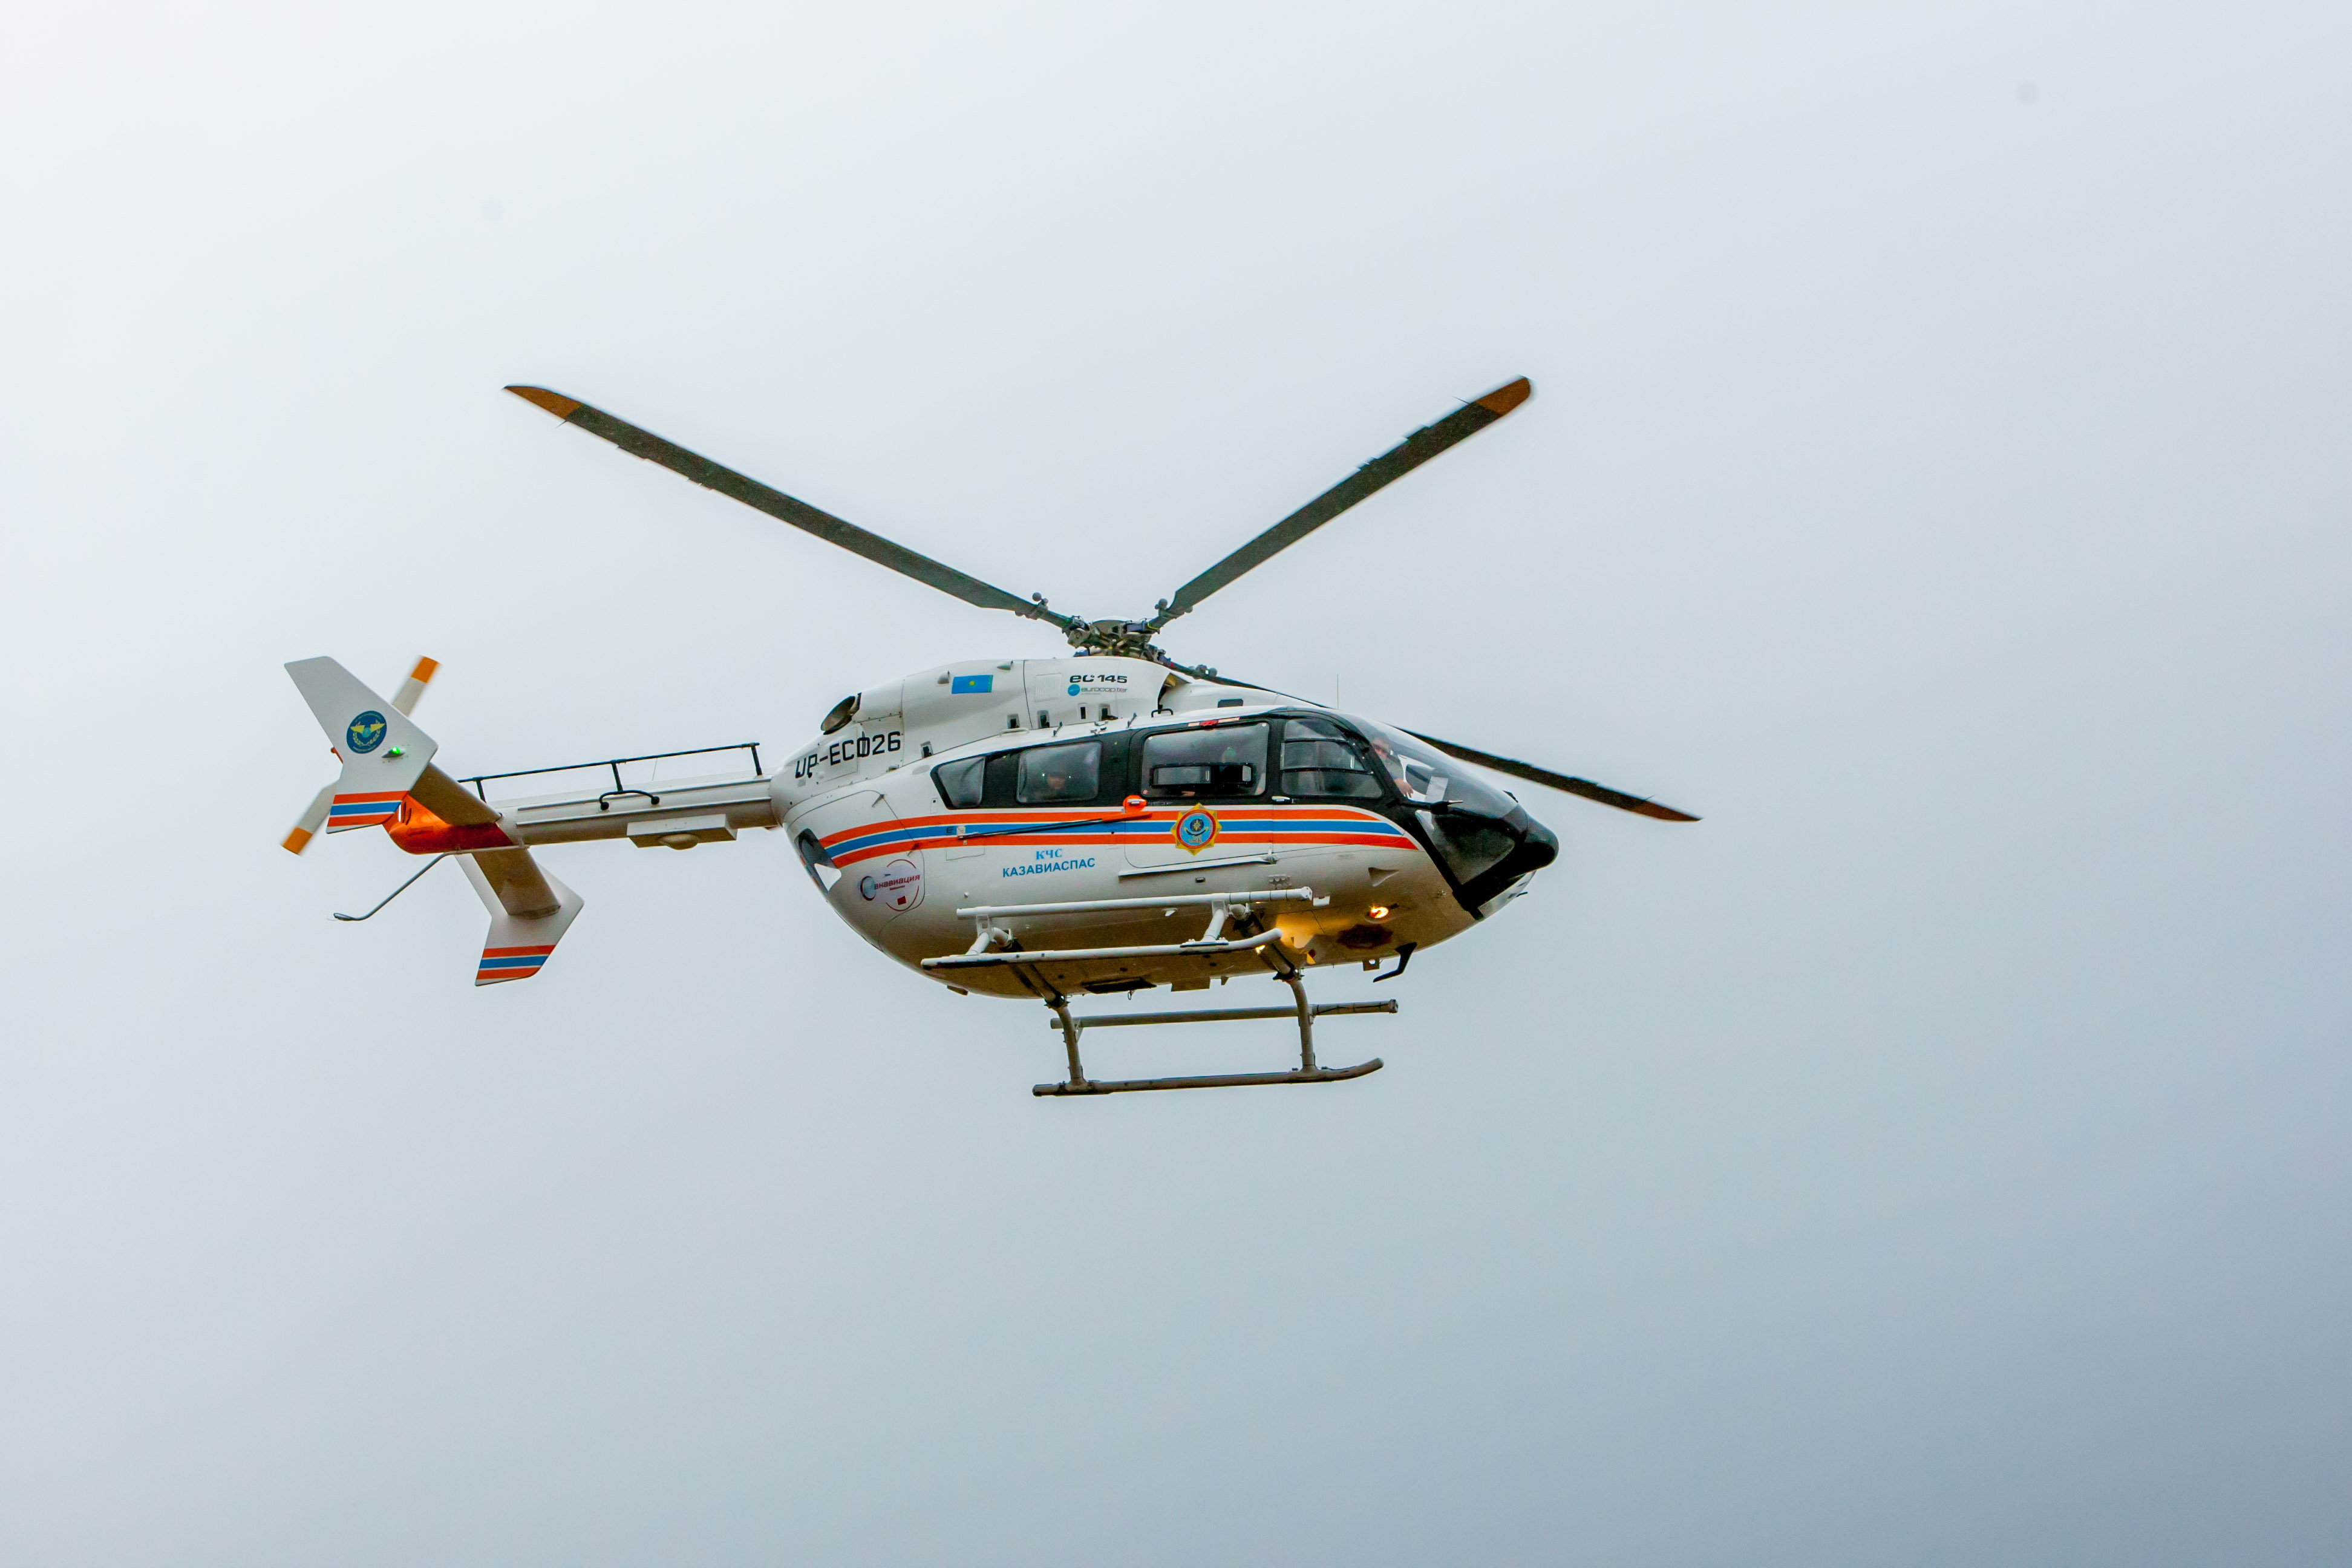 Мужчину в тяжелом состоянии после ДТП транспортировали вертолетом из Жетысая в Шымкент